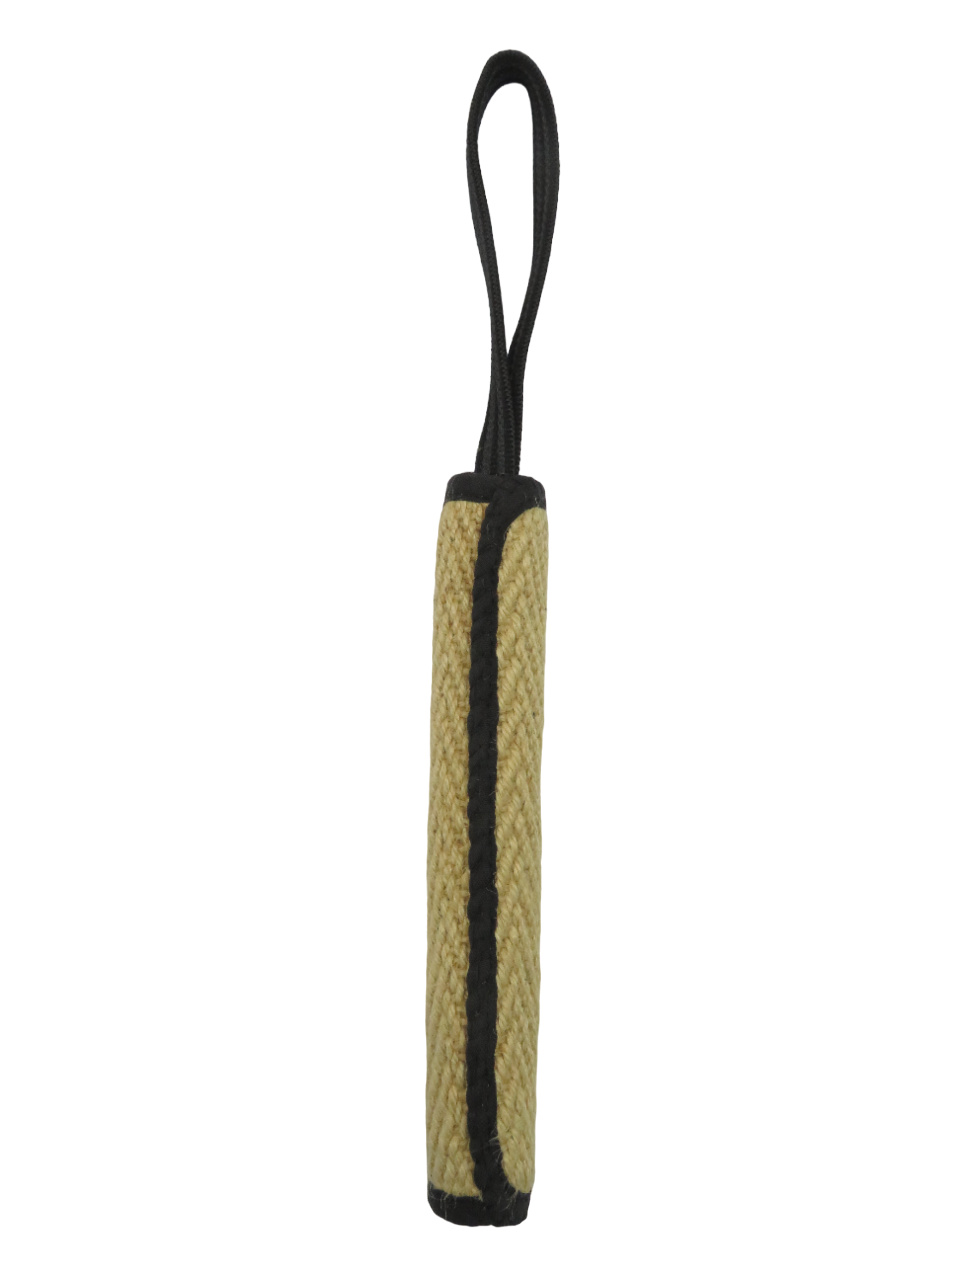 BOW WOW BOW WOW джутовая палка с 9-миллиметровой прорезиненной ручкой (натуральная) (120 г) bow wow bow wow джутовый мяч с длинной прорезиненной ручкой натуральный 235 г